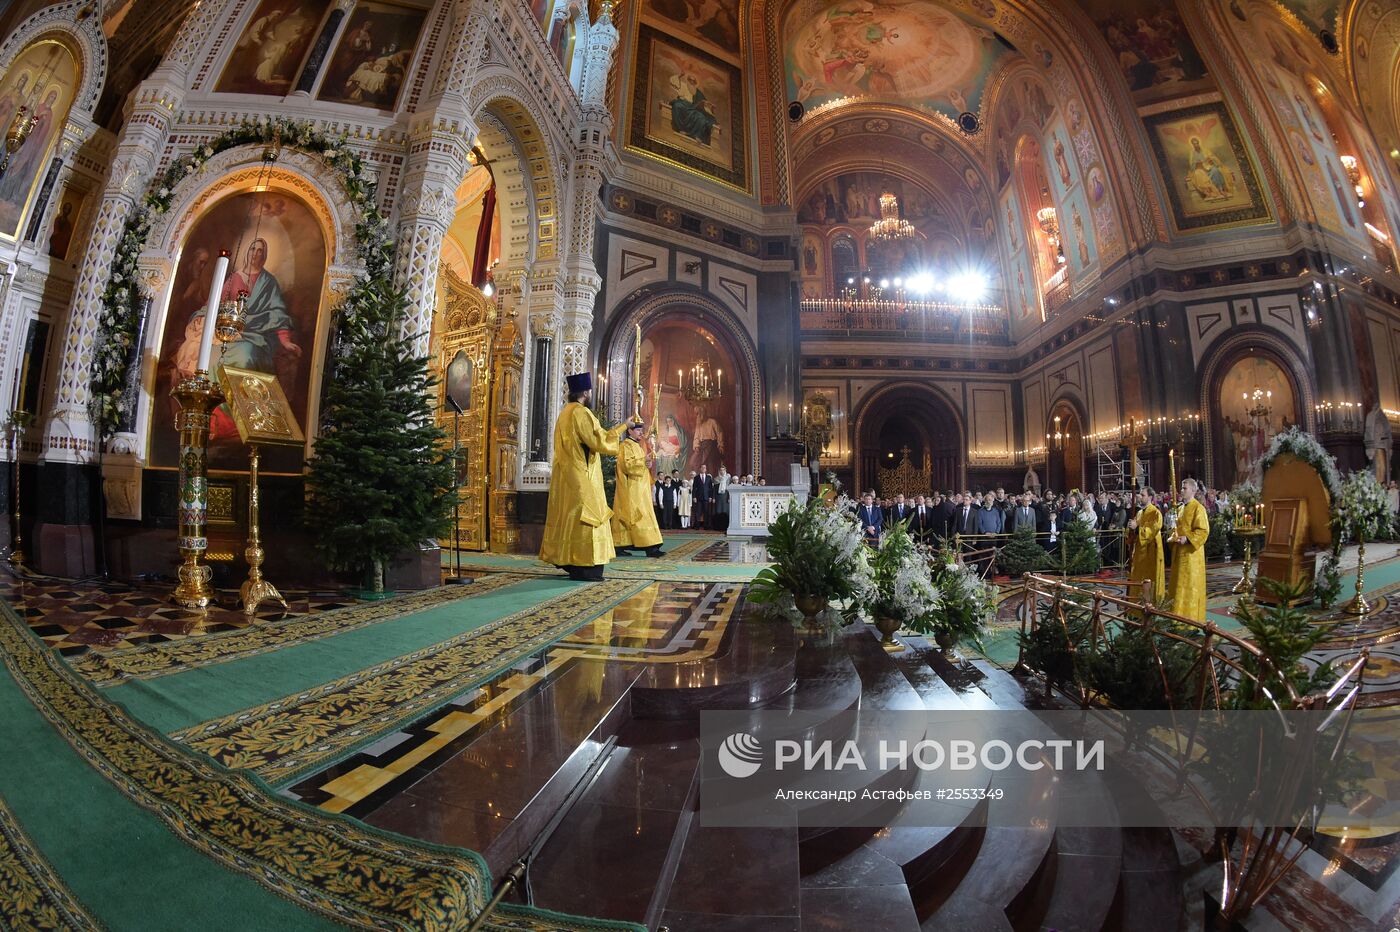 Премьер-министр РФ Д.Медведев посетил Рождественское богослужение в храме Христа Спасителя